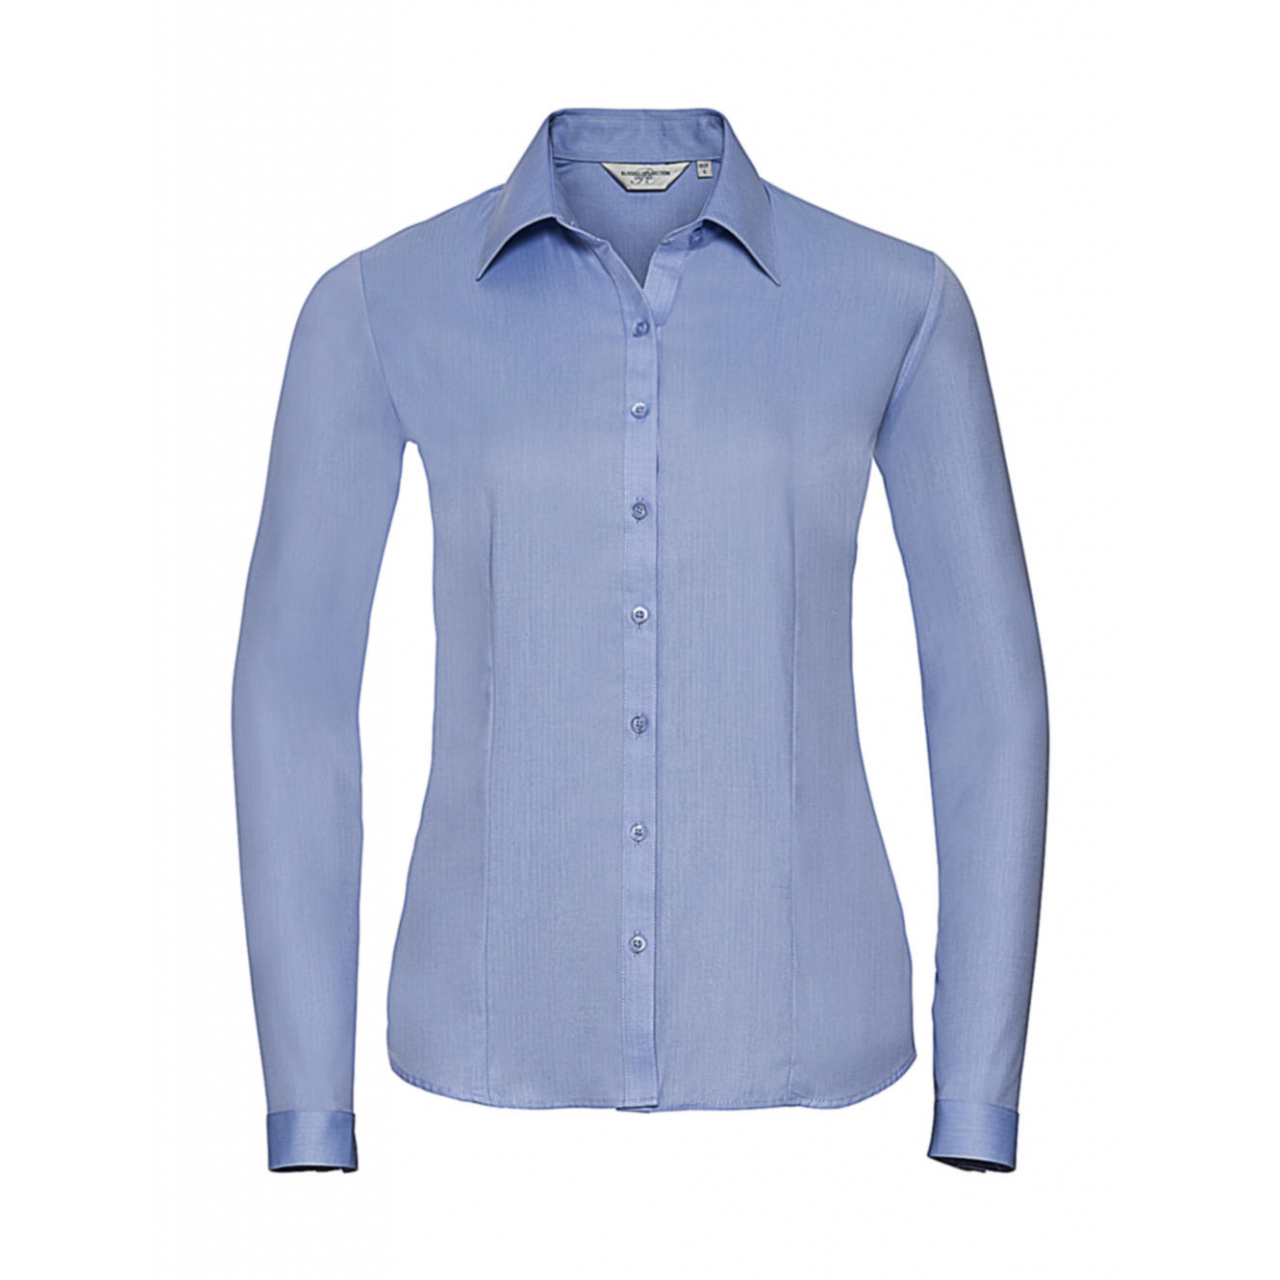 Košile dámská Russell Twill s dlouhým rukávem - světle modrá, XL